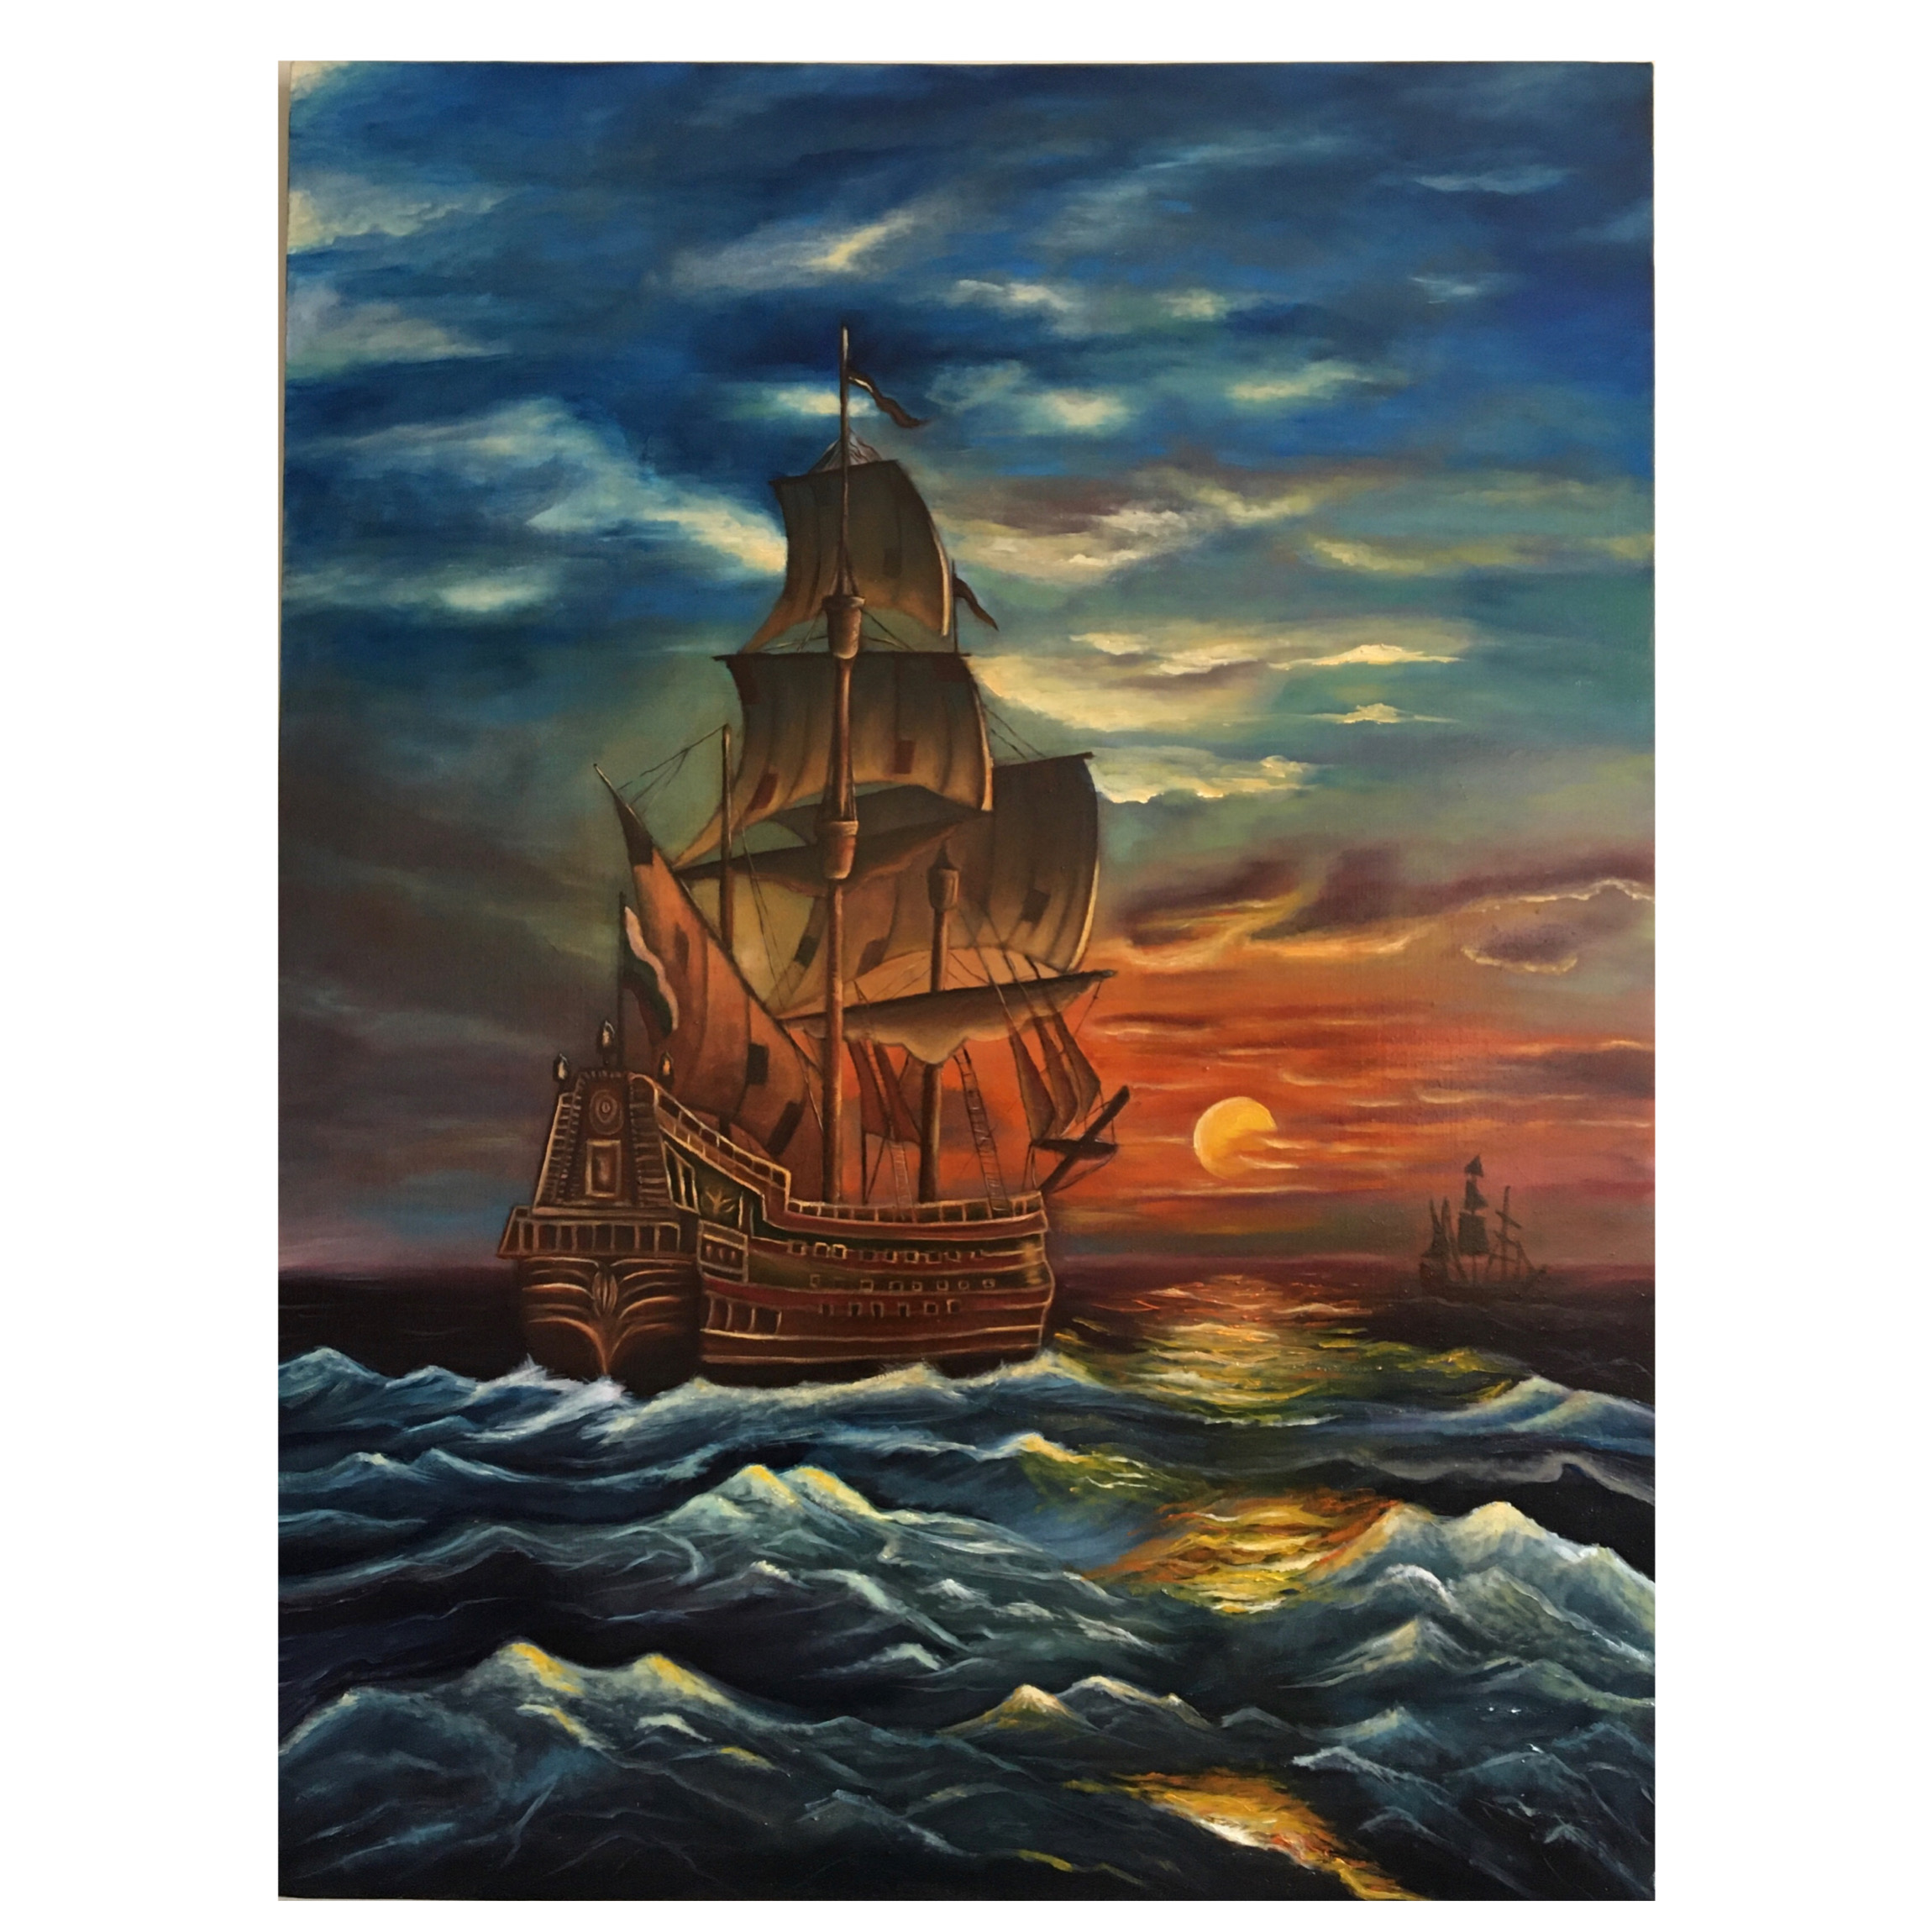 نقاشی رنگ روغن مدل کشتی در دریا